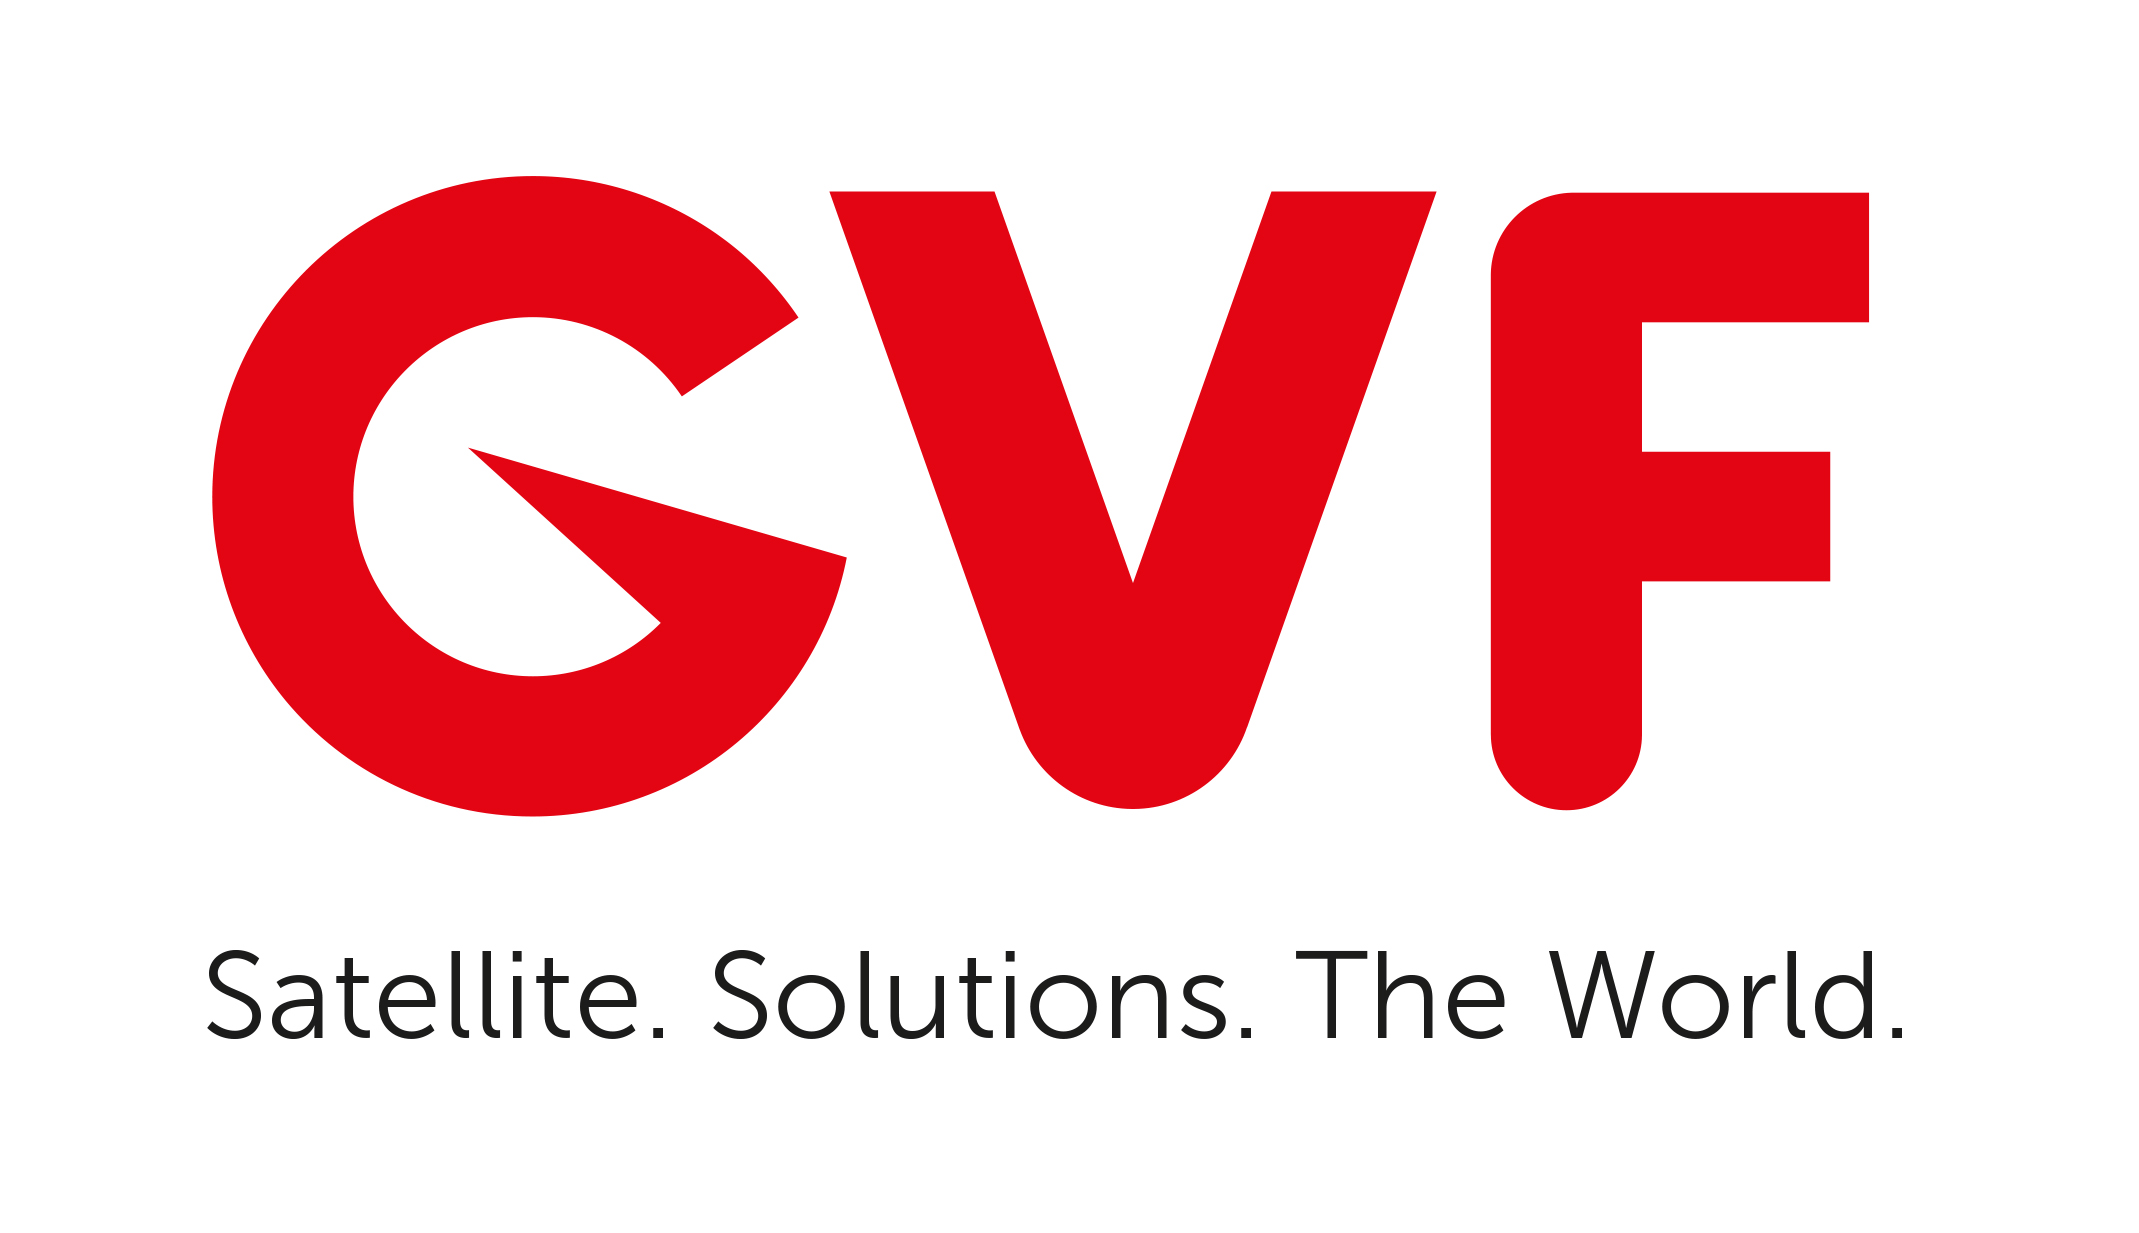 GVF logo